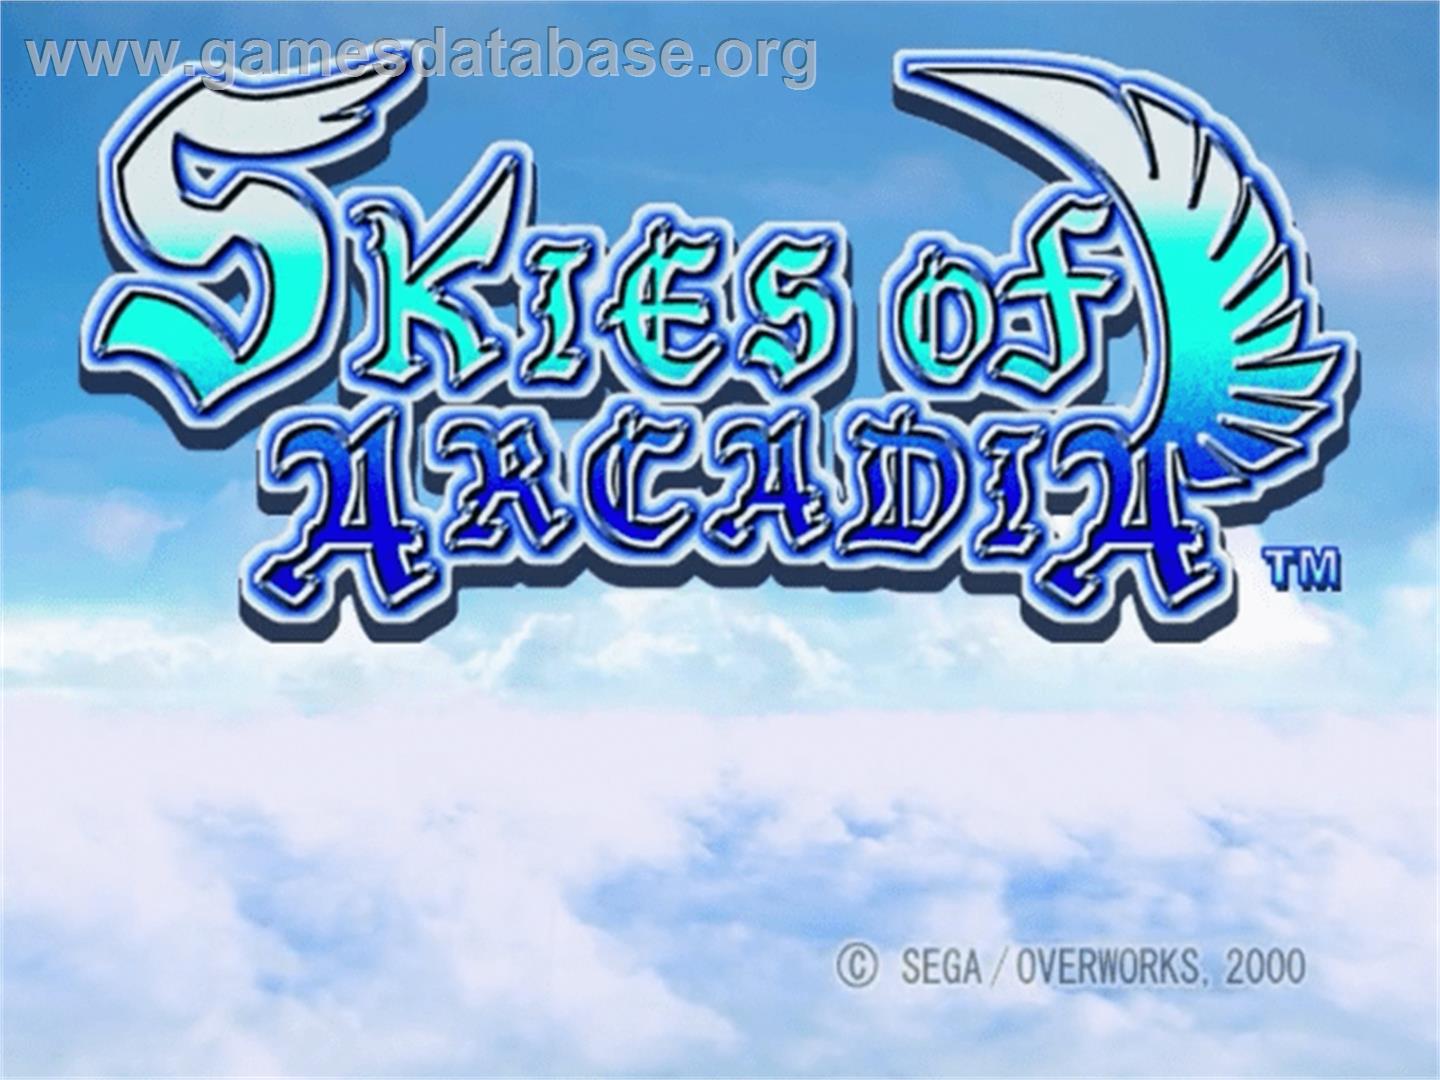 Skies of Arcadia - Sega Dreamcast - Artwork - Title Screen